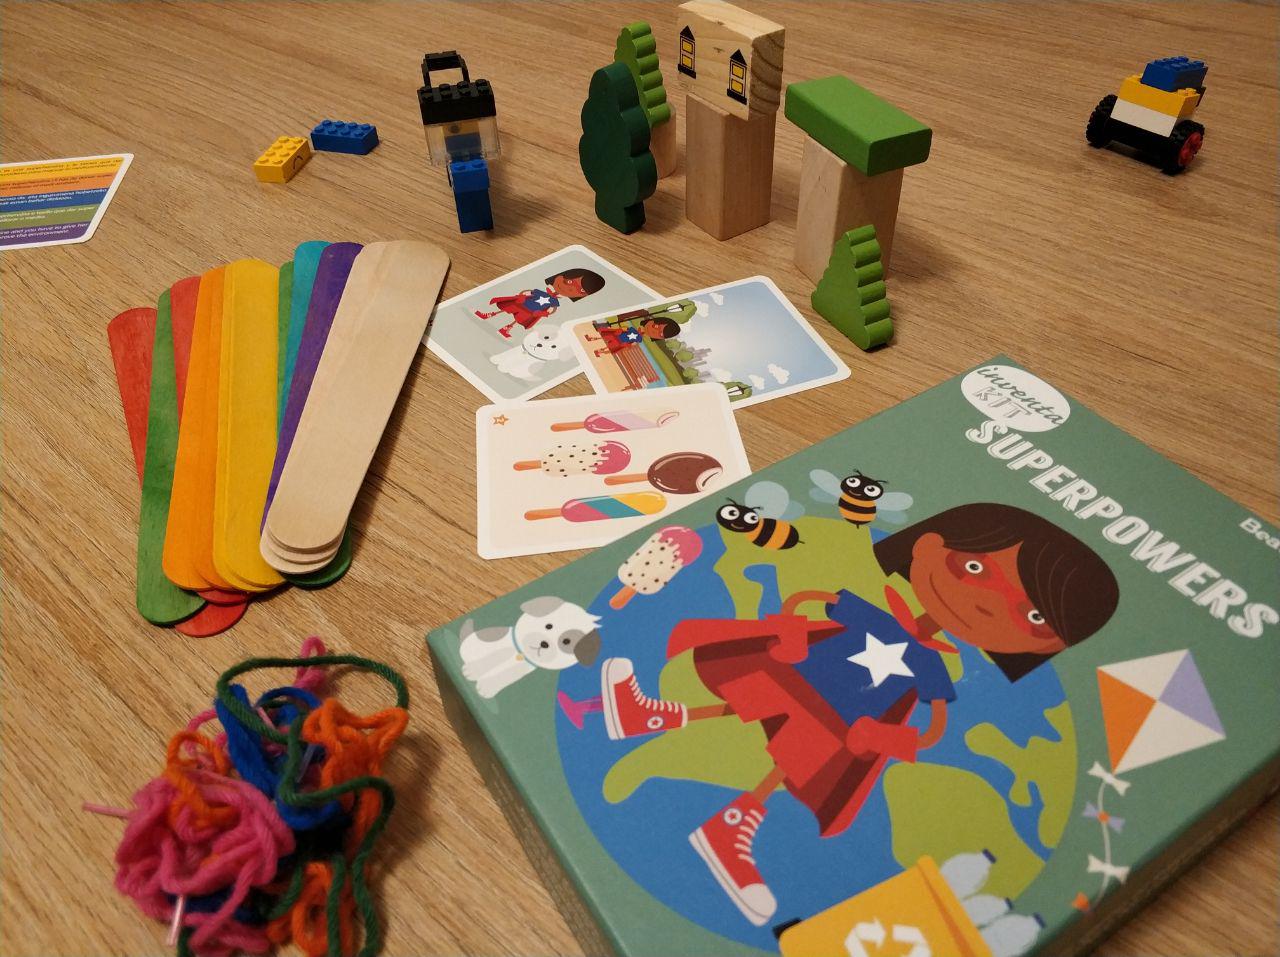 juegos para fomentar la creatividad Inventa Kit Space